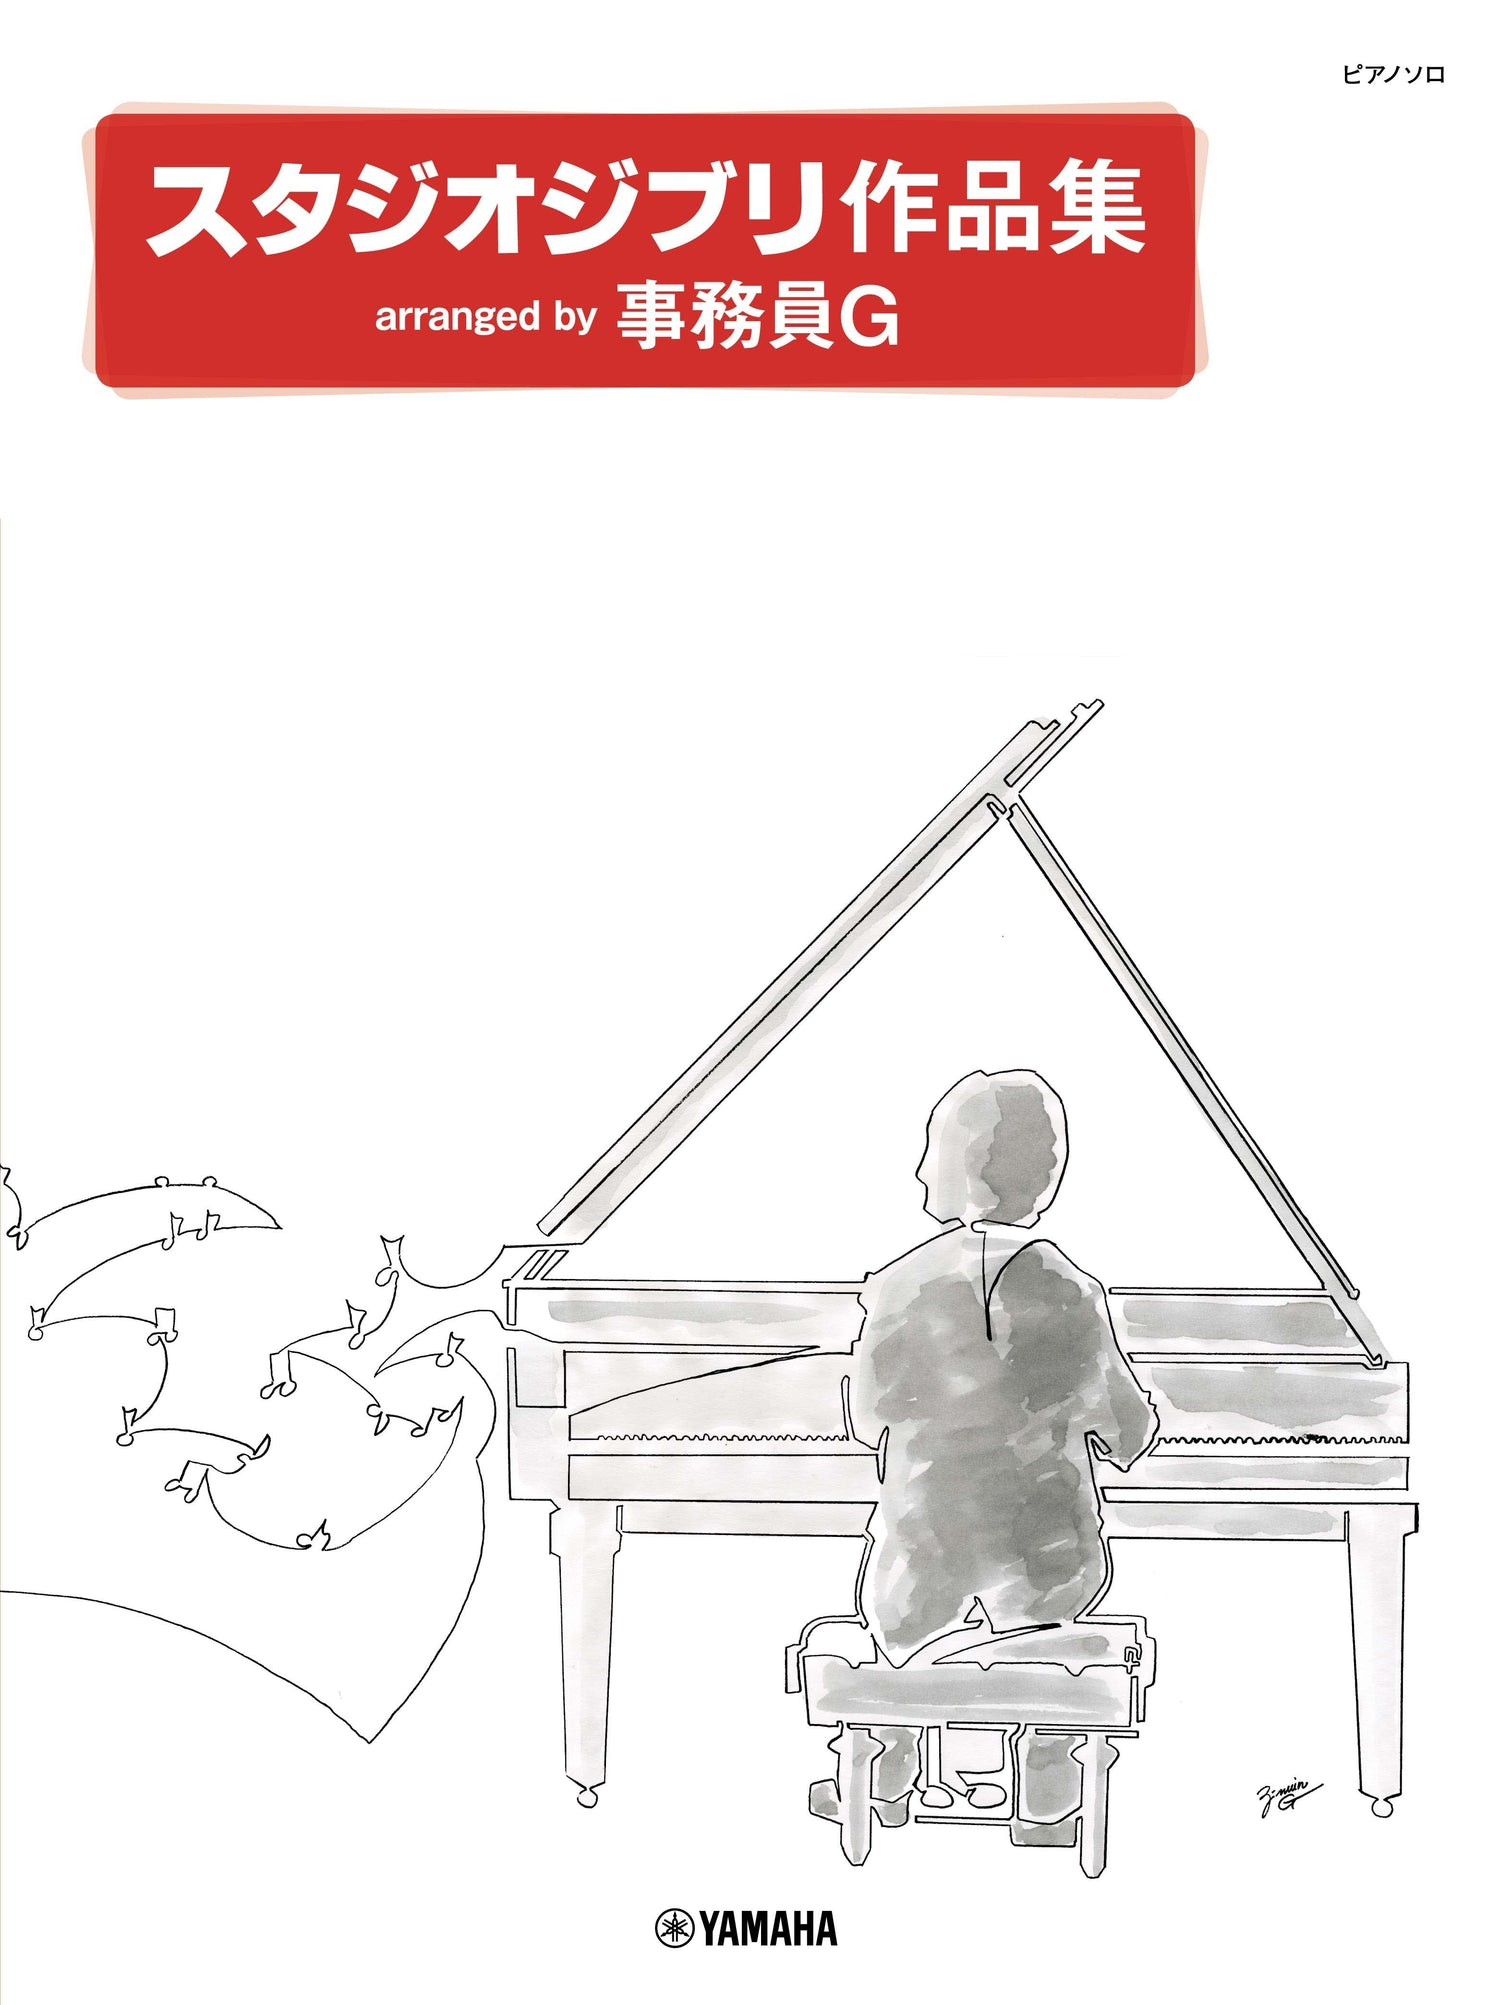 ピアノソロ スタジオジブリ作品集 arranged by 事務員G